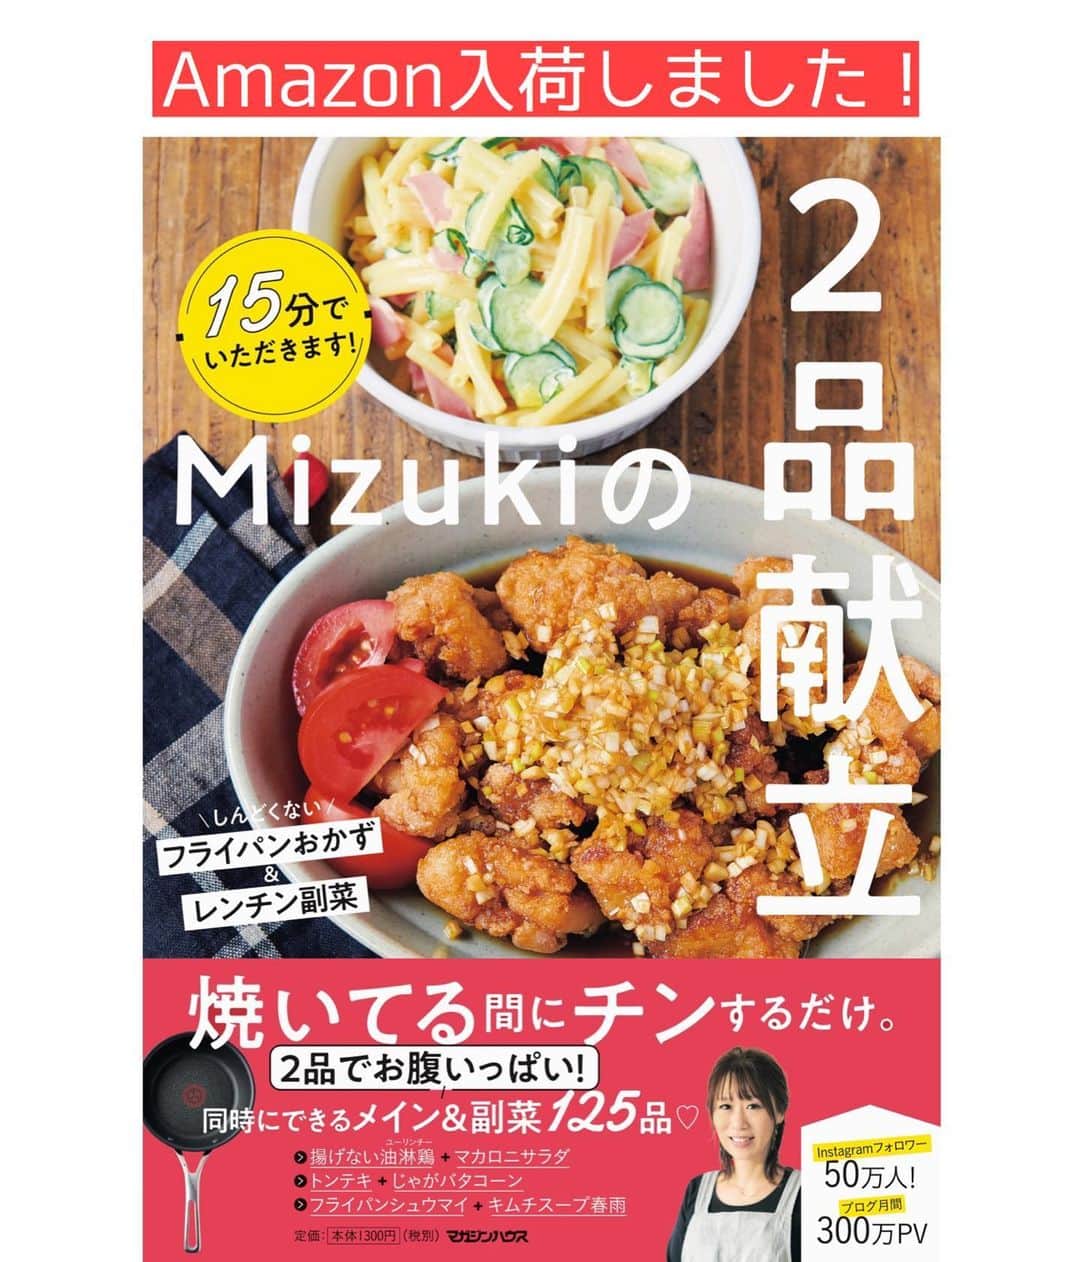 Mizuki【料理ブロガー・簡単レシピ】さんのインスタグラム写真 - (Mizuki【料理ブロガー・簡単レシピ】Instagram)「・﻿ 【#レシピ 】ーーーーーーー﻿ ささみde簡単！旨辛チキン﻿ ーーーーーーーーーーーーー﻿ ﻿ 　﻿ ﻿ おはようございます(*^^*)﻿ ﻿ 今日ご紹介させていただくのは﻿ \ ささみde簡単！旨辛チキン /﻿ 最近見つけた美味しそうな冷食を﻿ 想像で作ってみました(*´艸`)﻿ ﻿ ケチャップベースの調味料に﻿ コチュジャンを加えて旨辛に♡﻿ ごはんもお酒もがっつりすすむ﻿ やみつき味に仕上げましたよ〜♩﻿ (本物はもっと辛そうでしたが﻿ これはお子さんも食べられる程度です💕)﻿ ﻿ 冷めても美味しいので﻿ お弁当にもおすすめ！！﻿ よかったらお試し下さいね(*^^*)﻿ ﻿ ﻿ ﻿ ＿＿＿＿＿＿＿＿＿＿＿＿＿＿＿＿＿＿＿＿﻿ 【2〜3人分】﻿ ささみ...6本﻿ ●酒...小1﻿ ●塩こしょう...少々﻿ 片栗粉...適量﻿ サラダ油...大4﻿ ☆ケチャップ...大2﻿ ☆水・醤油・はちみつ...各大1﻿ ☆コチュジャン...小1﻿ 粗挽き黒こしょう...適量﻿ ﻿ 1.ささみは斜め3等分に切り、●を揉み込み片栗粉をまぶす。☆は合わせておく。﻿ 2.フライパンにサラダ油を中火で熱し、ささみを両面焼いて火を通す。﻿ 3.余分な油を拭き取り、☆を加えて煮からめ、仕上げに黒こしょうを振る。﻿ ￣￣￣￣￣￣￣￣￣￣￣￣￣￣￣￣￣￣￣￣﻿ ﻿ ﻿ ﻿ 《ポイント》﻿ ︎ ♦︎ささみの筋が気になる方は除いて下さい♩﻿ ♦︎はちみつは砂糖に置き換えてもOK♩﻿ ♦︎はちみつが入っているので1歳未満のお子さんには食べさせないで下さい☆﻿ ﻿ ﻿ ﻿ ﻿ ﻿ ﻿ ﻿ 🎁器プレゼントキャンペーン実施中🎁﻿ _________________________________﻿ ﻿ おかげざで［今どき和食］が10刷増版となりました✨﻿ そこで心ばかりですが感謝の気持ちをお伝えしたく﻿ 《器プレゼントキャンペーンを実施中です♩》﻿ ▼ ▼ ▼﻿ ＿＿＿＿＿＿＿＿＿﻿ 【プレゼント内容】﻿ ￣￣￣￣￣￣￣￣￣﻿ 今人気の波佐見焼 大皿1枚﻿ もしくは小皿2枚セットを15名様に﻿ ＿＿＿＿＿＿＿＿＿﻿ 【応募方法】﻿ ￣￣￣￣￣￣￣￣￣﻿ ❶［Mizukiの今どき和食］から﻿ 1品ご自身で作った料理画像、﻿ もしくはカバー(表紙)画像を準備。﻿ ❷［#Mizukiの今どき和食器プレゼント ］﻿ のタグを付けて投稿！﻿ (以上で応募完了です😊　2/14〆切)﻿ _________________________________﻿ ﻿ 　﻿ ﻿ ﻿ ﻿ ﻿ ⭐️発売中⭐️﻿ ＿＿＿＿＿＿＿＿＿＿＿＿＿＿＿＿＿＿﻿ ホケミレシピの決定版♩﻿ \はじめてでも失敗しない/﻿ 📙#ホットケーキミックスのお菓子 📙﻿ ﻿ NHKまる得マガジンテキスト☆﻿ ホットケーキミックスで﻿ 📗絶品おやつ&意外なランチ📗﻿ ﻿ しんどくない献立、考えました♩﻿ \15分でいただきます/﻿ 📕#Mizukiの2品献立 📕﻿ ﻿ 和食をもっとカジュアルに♩﻿ \毎日のごはんがラクになる/﻿ 📘Mizukiの今どき和食 📘﻿ ﻿ 重版しました！﻿ ありがとうございます😭﻿ 📗ラクしておいしい！#1品晩ごはん 📗﻿ ﻿ 摂食障害から料理研究家になるまでを綴った﻿ はじめてのエッセイ本﻿ 📙#普通のおいしいをつくるひと 📙﻿ ￣￣￣￣￣￣￣￣￣￣￣￣￣￣￣￣￣￣￣﻿ ﻿ ﻿ ﻿ ﻿ ﻿ ＿＿＿＿＿＿＿＿＿＿＿＿＿＿＿＿＿＿﻿ レシピを作って下さった際や﻿ レシピ本についてのご投稿には﻿ タグ付け( @mizuki_31cafe )して﻿ お知らせいただけると嬉しいです😊💕﻿ ￣￣￣￣￣￣￣￣￣￣￣￣￣￣￣￣￣￣﻿ ﻿ ﻿ ﻿ ﻿ ﻿ #ささみ#旨辛チキン#ピリ辛#コスパ#Mizuki#簡単レシピ#時短レシピ#節約レシピ#料理#フーディーテーブル#マカロニメイト#おうちごはん#デリスタグラマー#料理好きな人と繋がりたい#おうちごはんlover#写真好きな人と繋がりたい#foodpic#cooking#recipe#lin_stagrammer#foodporn#yummy#f52grams#旨辛チキンm」2月8日 6時55分 - mizuki_31cafe